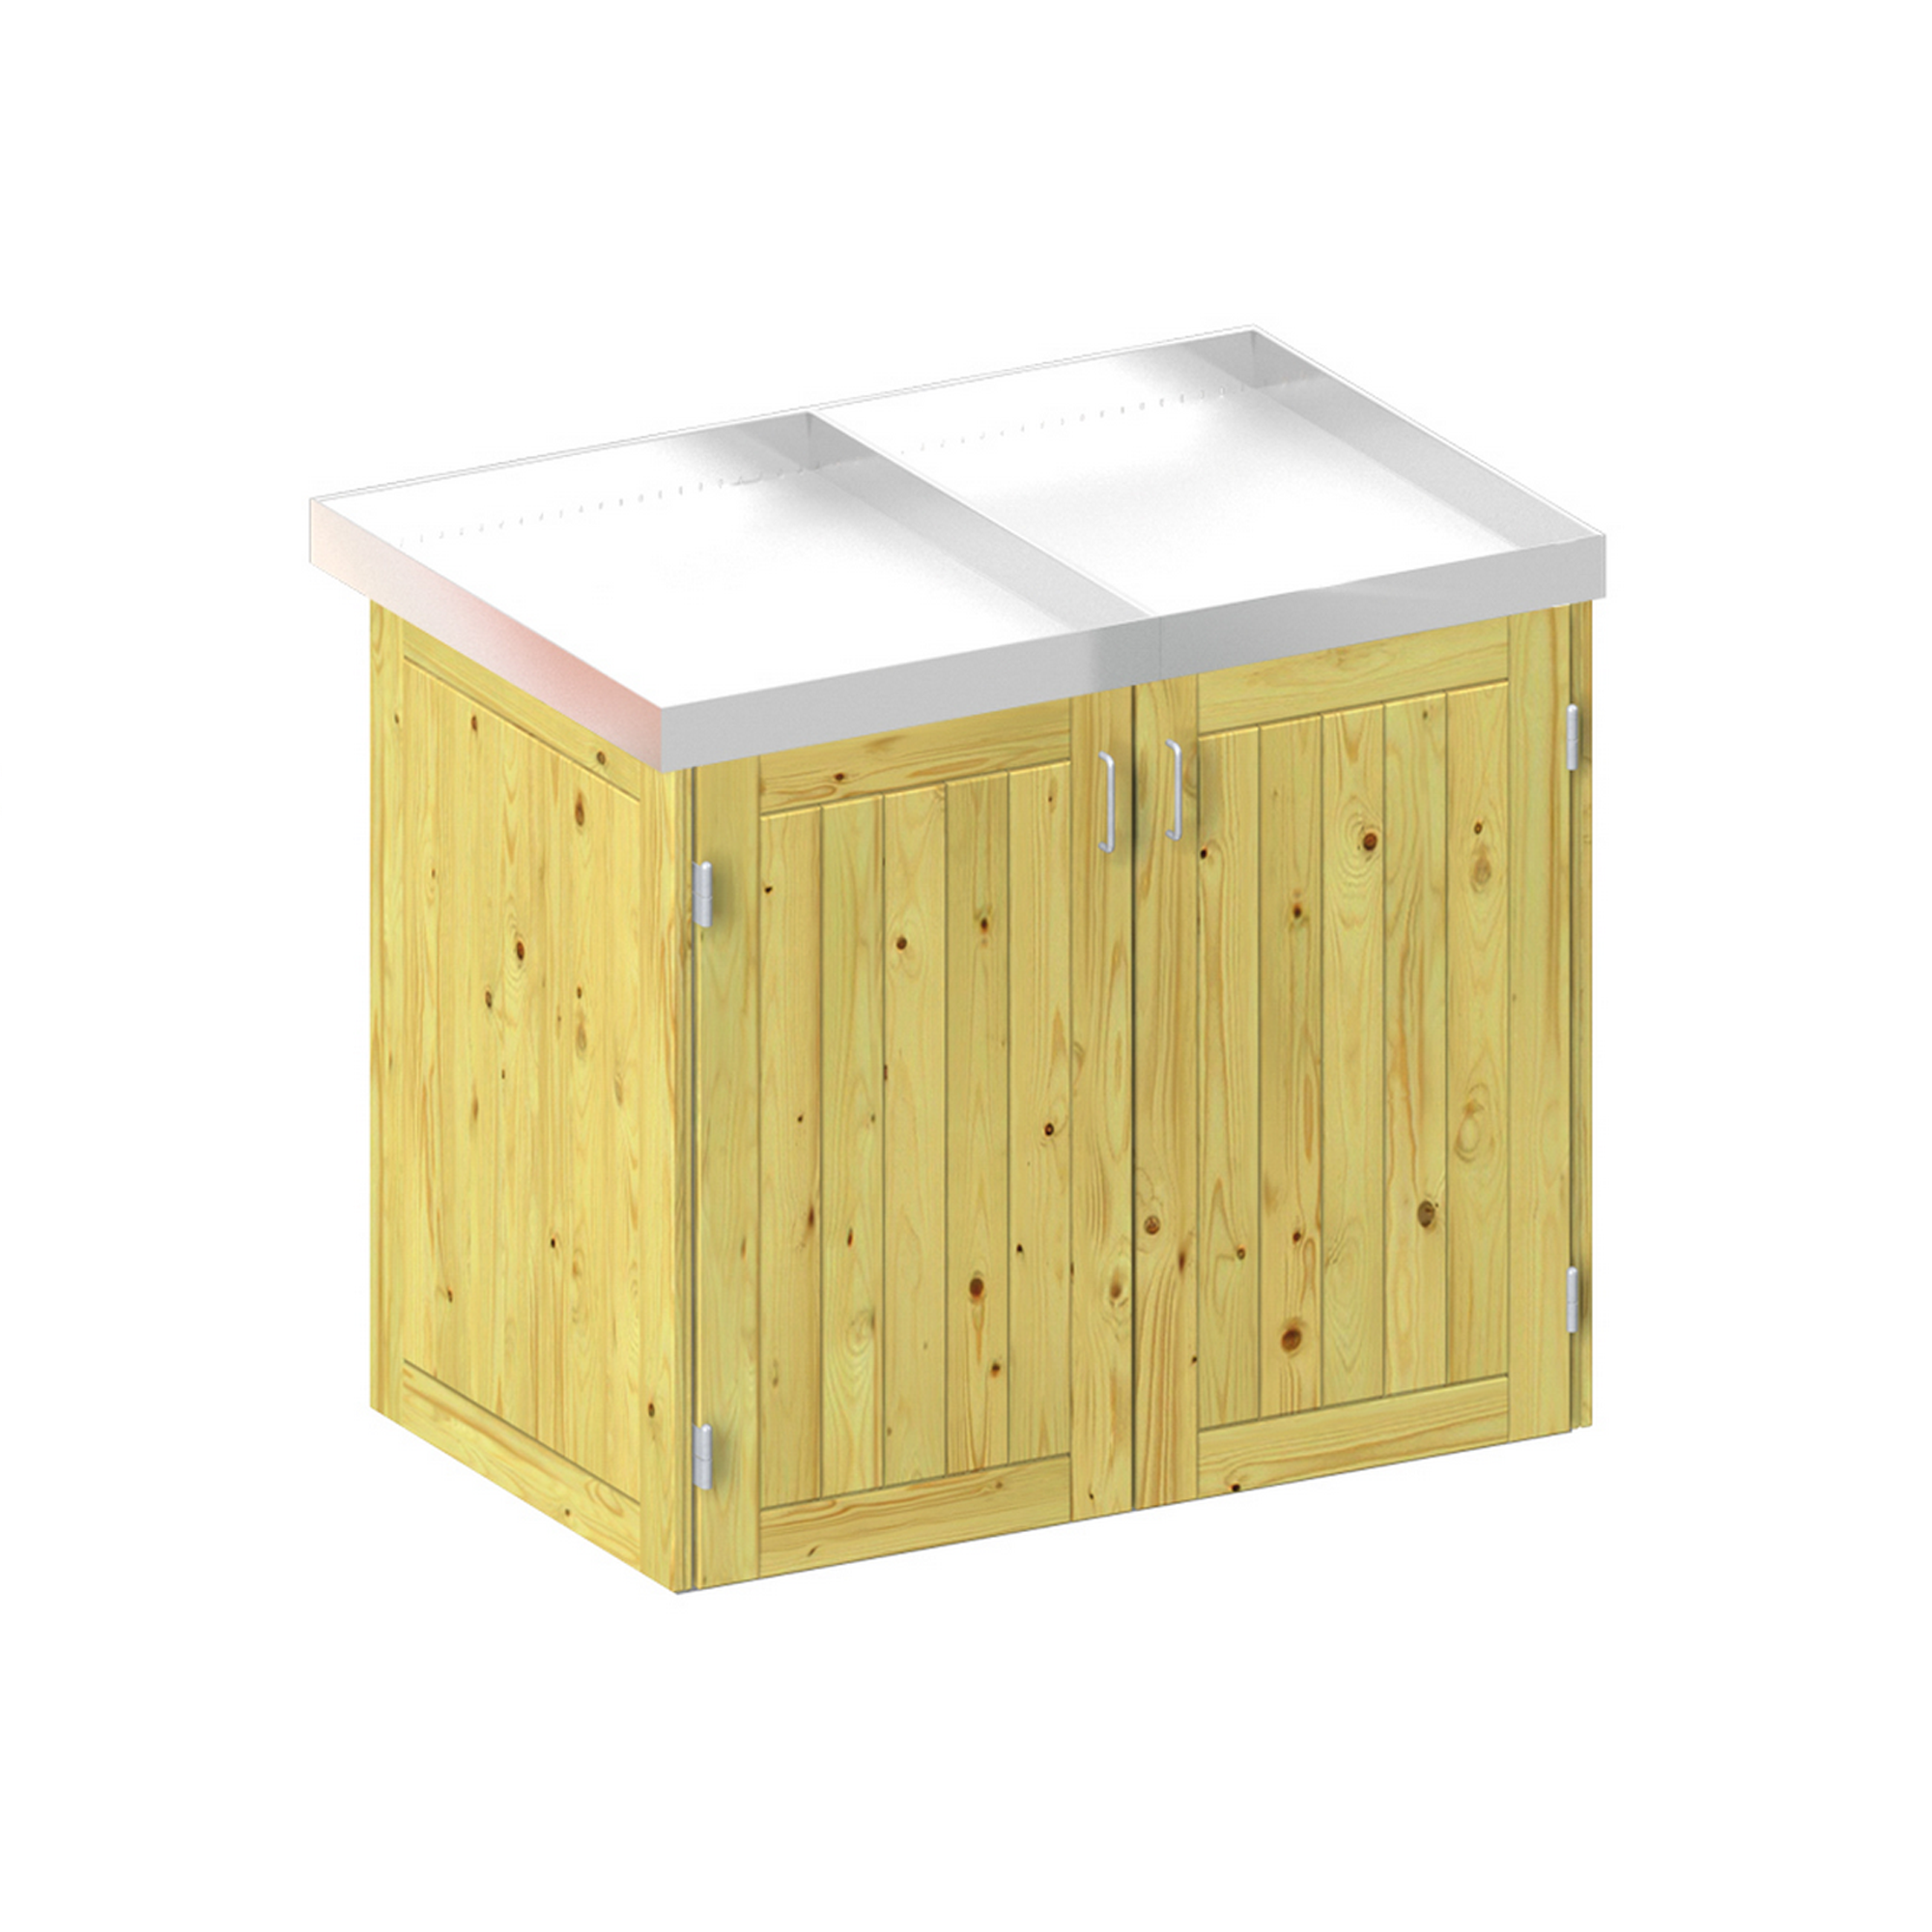 Mülltonnenbox 'Binto' mit Pflanzkasten naturfarben 150 x 129 x 90 cm + product picture